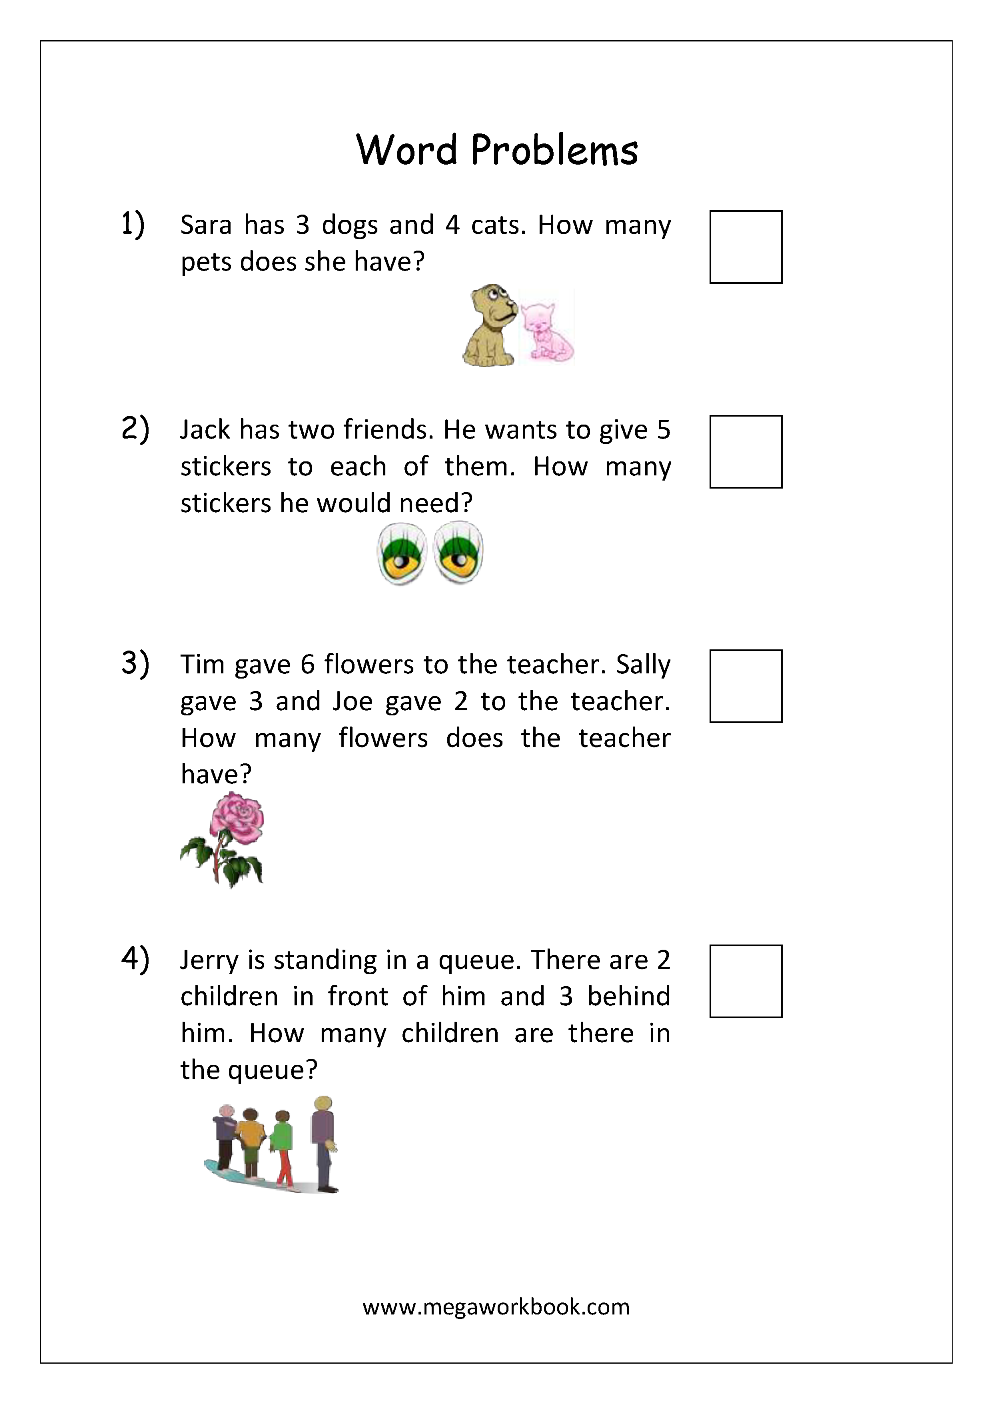 kindergarten-addition-word-problems-kindergarten